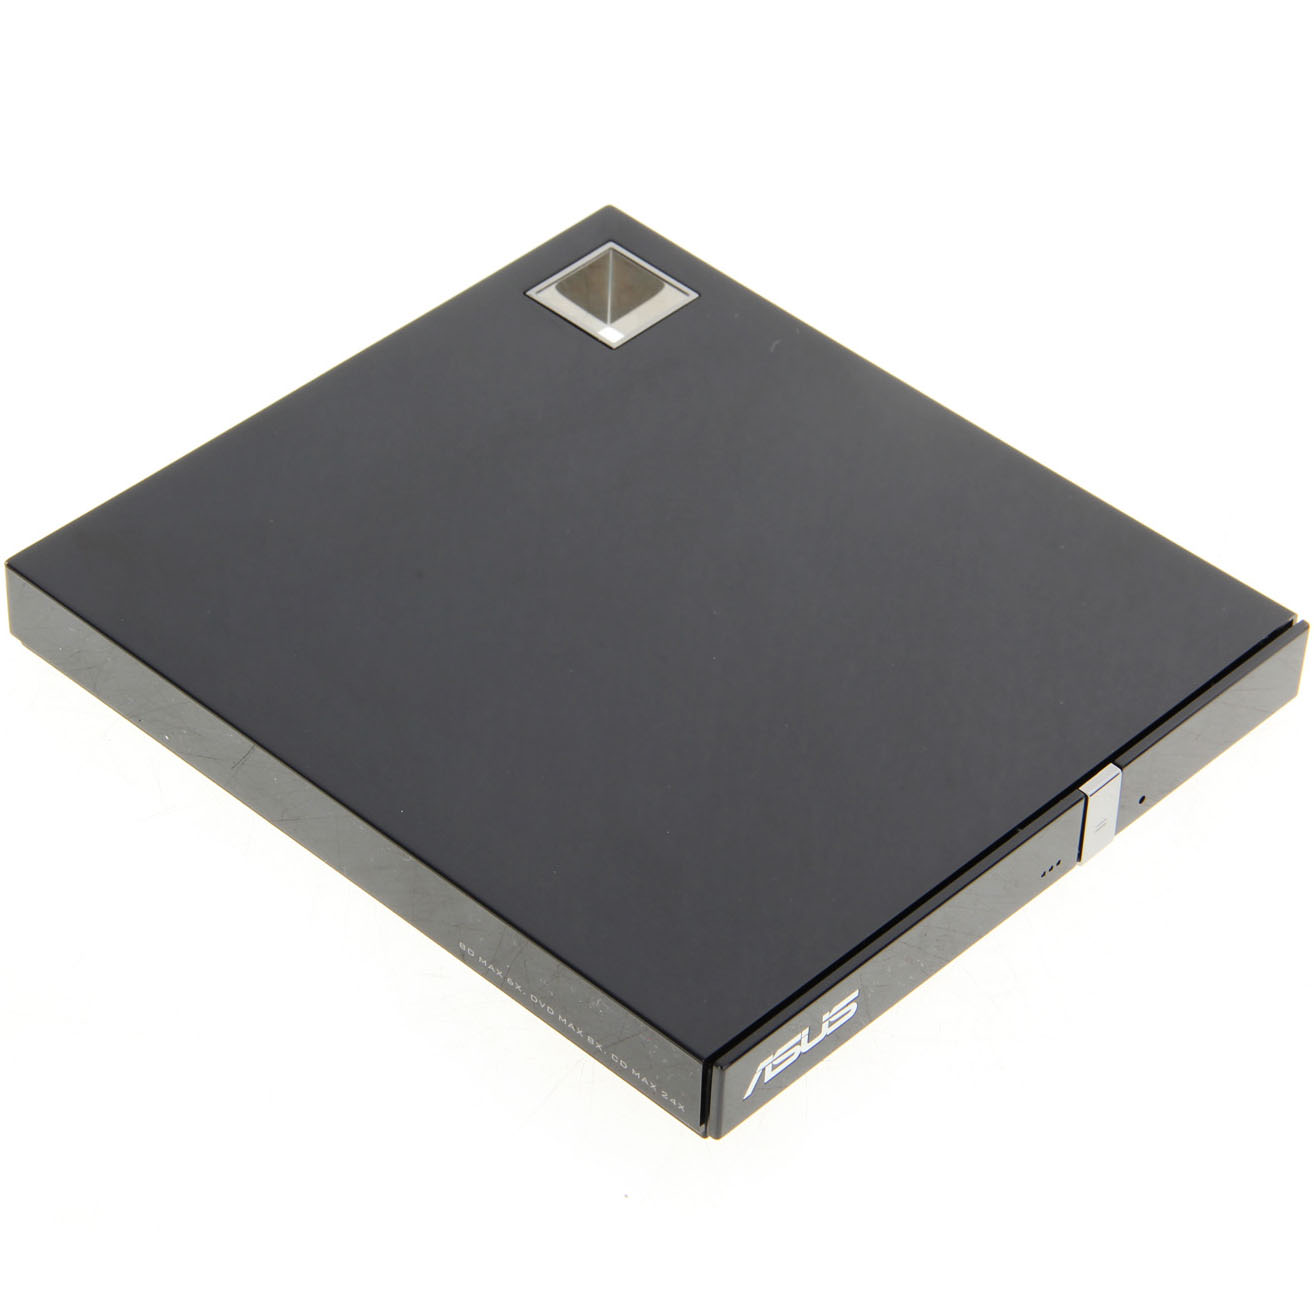 BDRW Asus SBW-06D2X-U, внешний, slim, USB 2.0, черный, питание USB